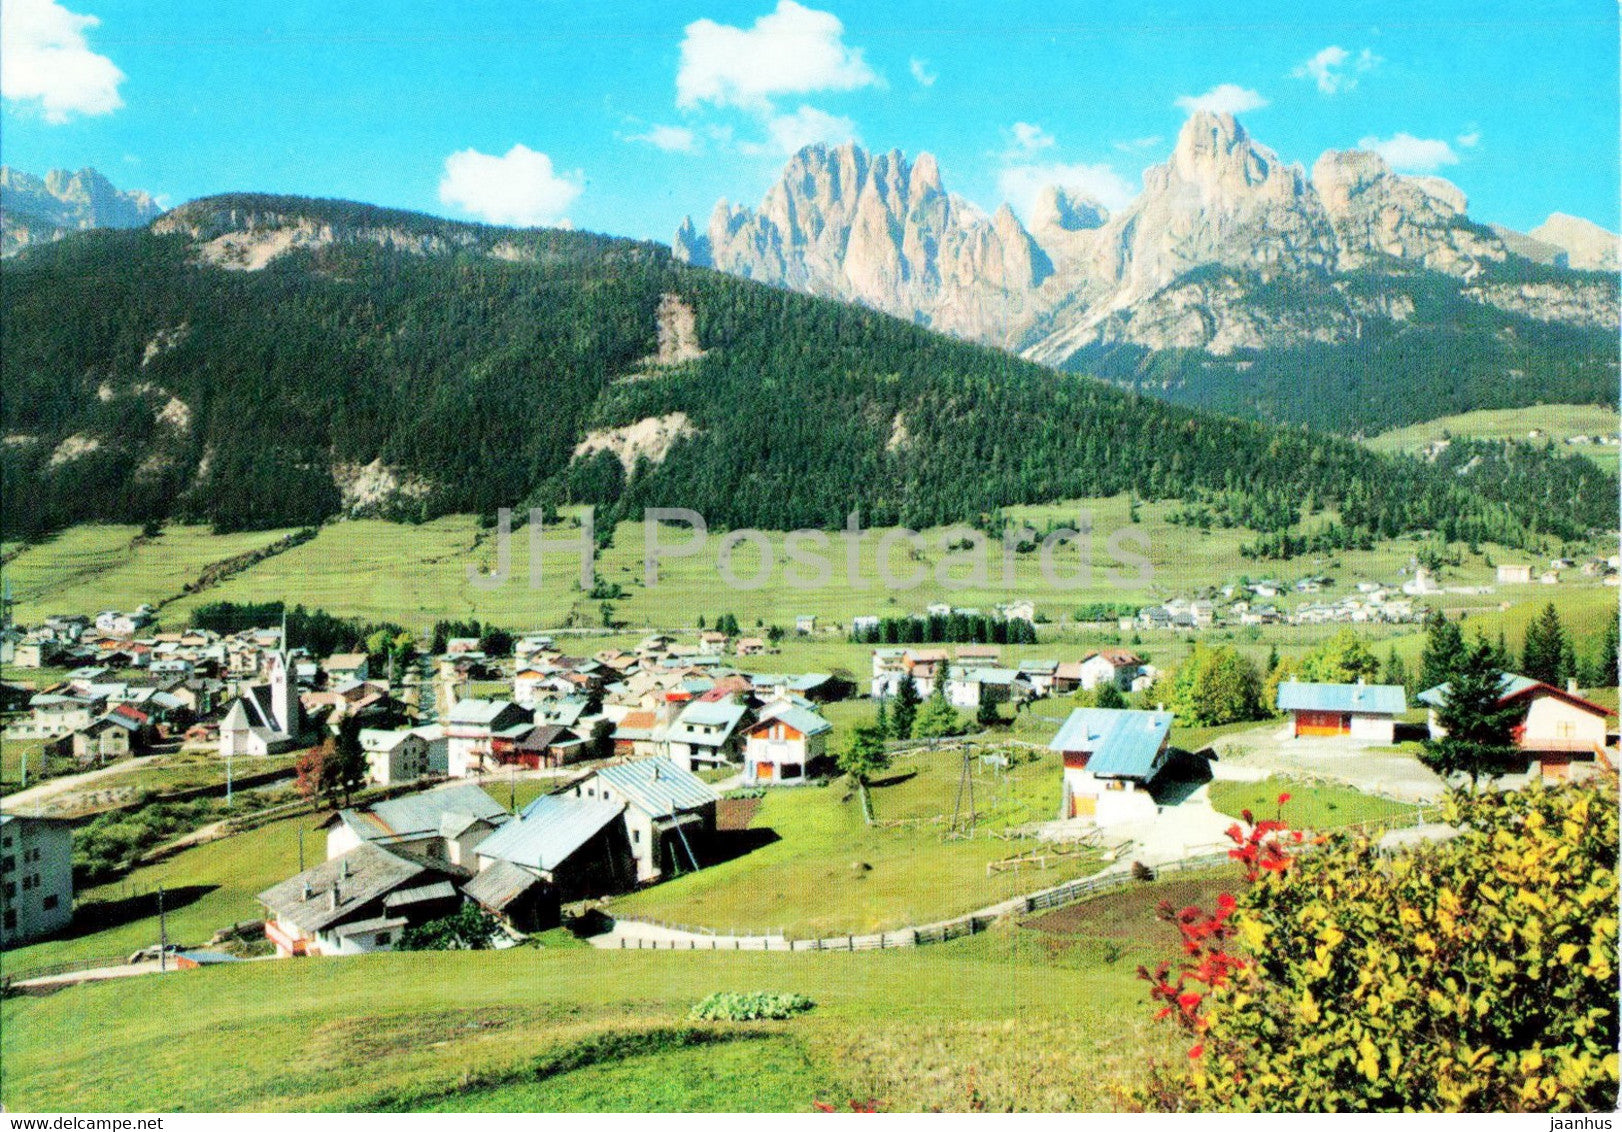 Pozza e Pera di Fassa - Dolomiti - Italy - used - JH Postcards